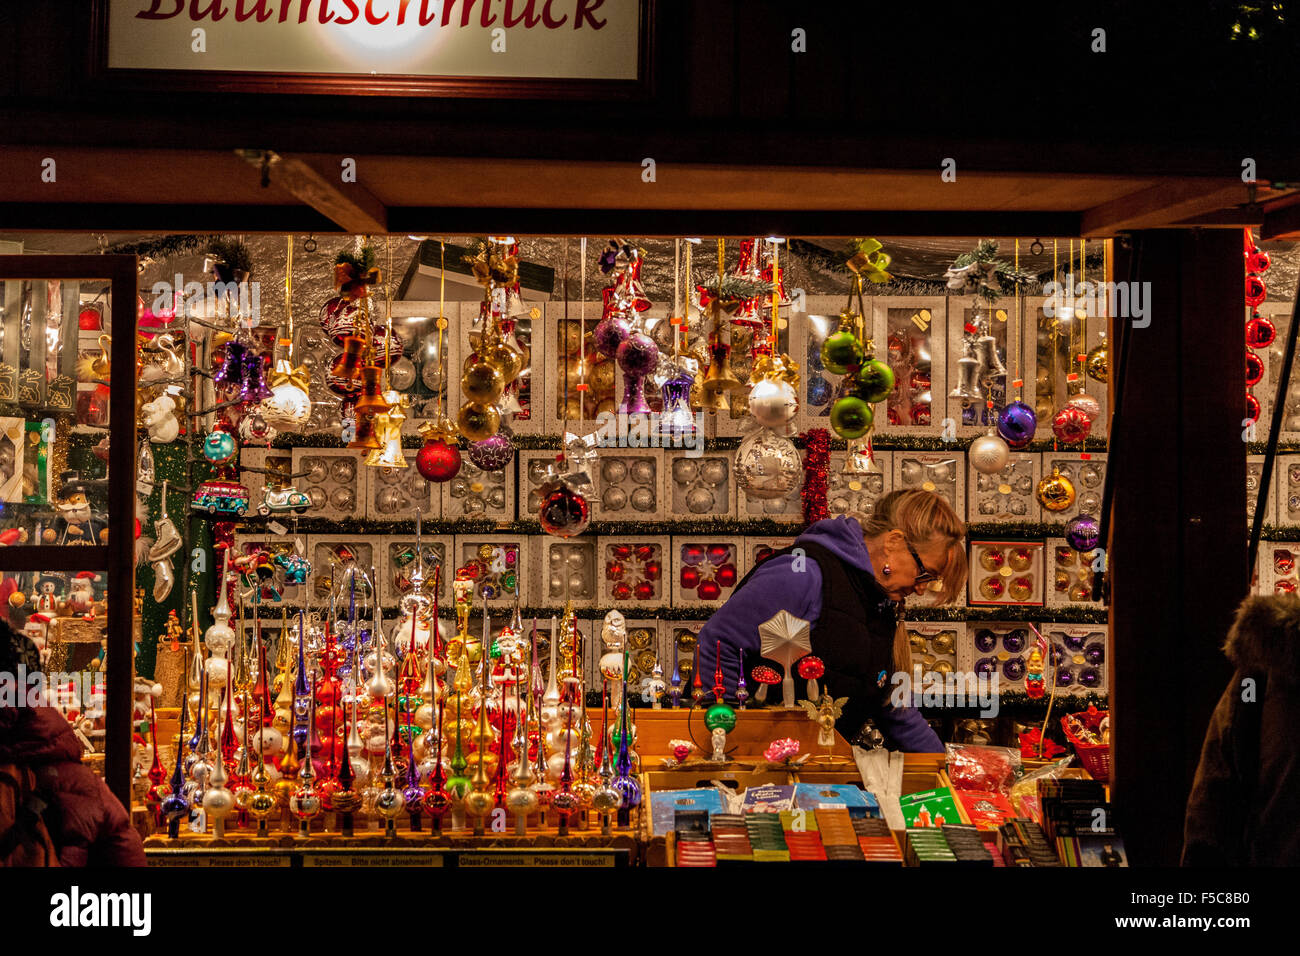 Weihnachtsmarkt stand gefüllt mit Spielzeug und Schmuck Stockfotografie -  Alamy